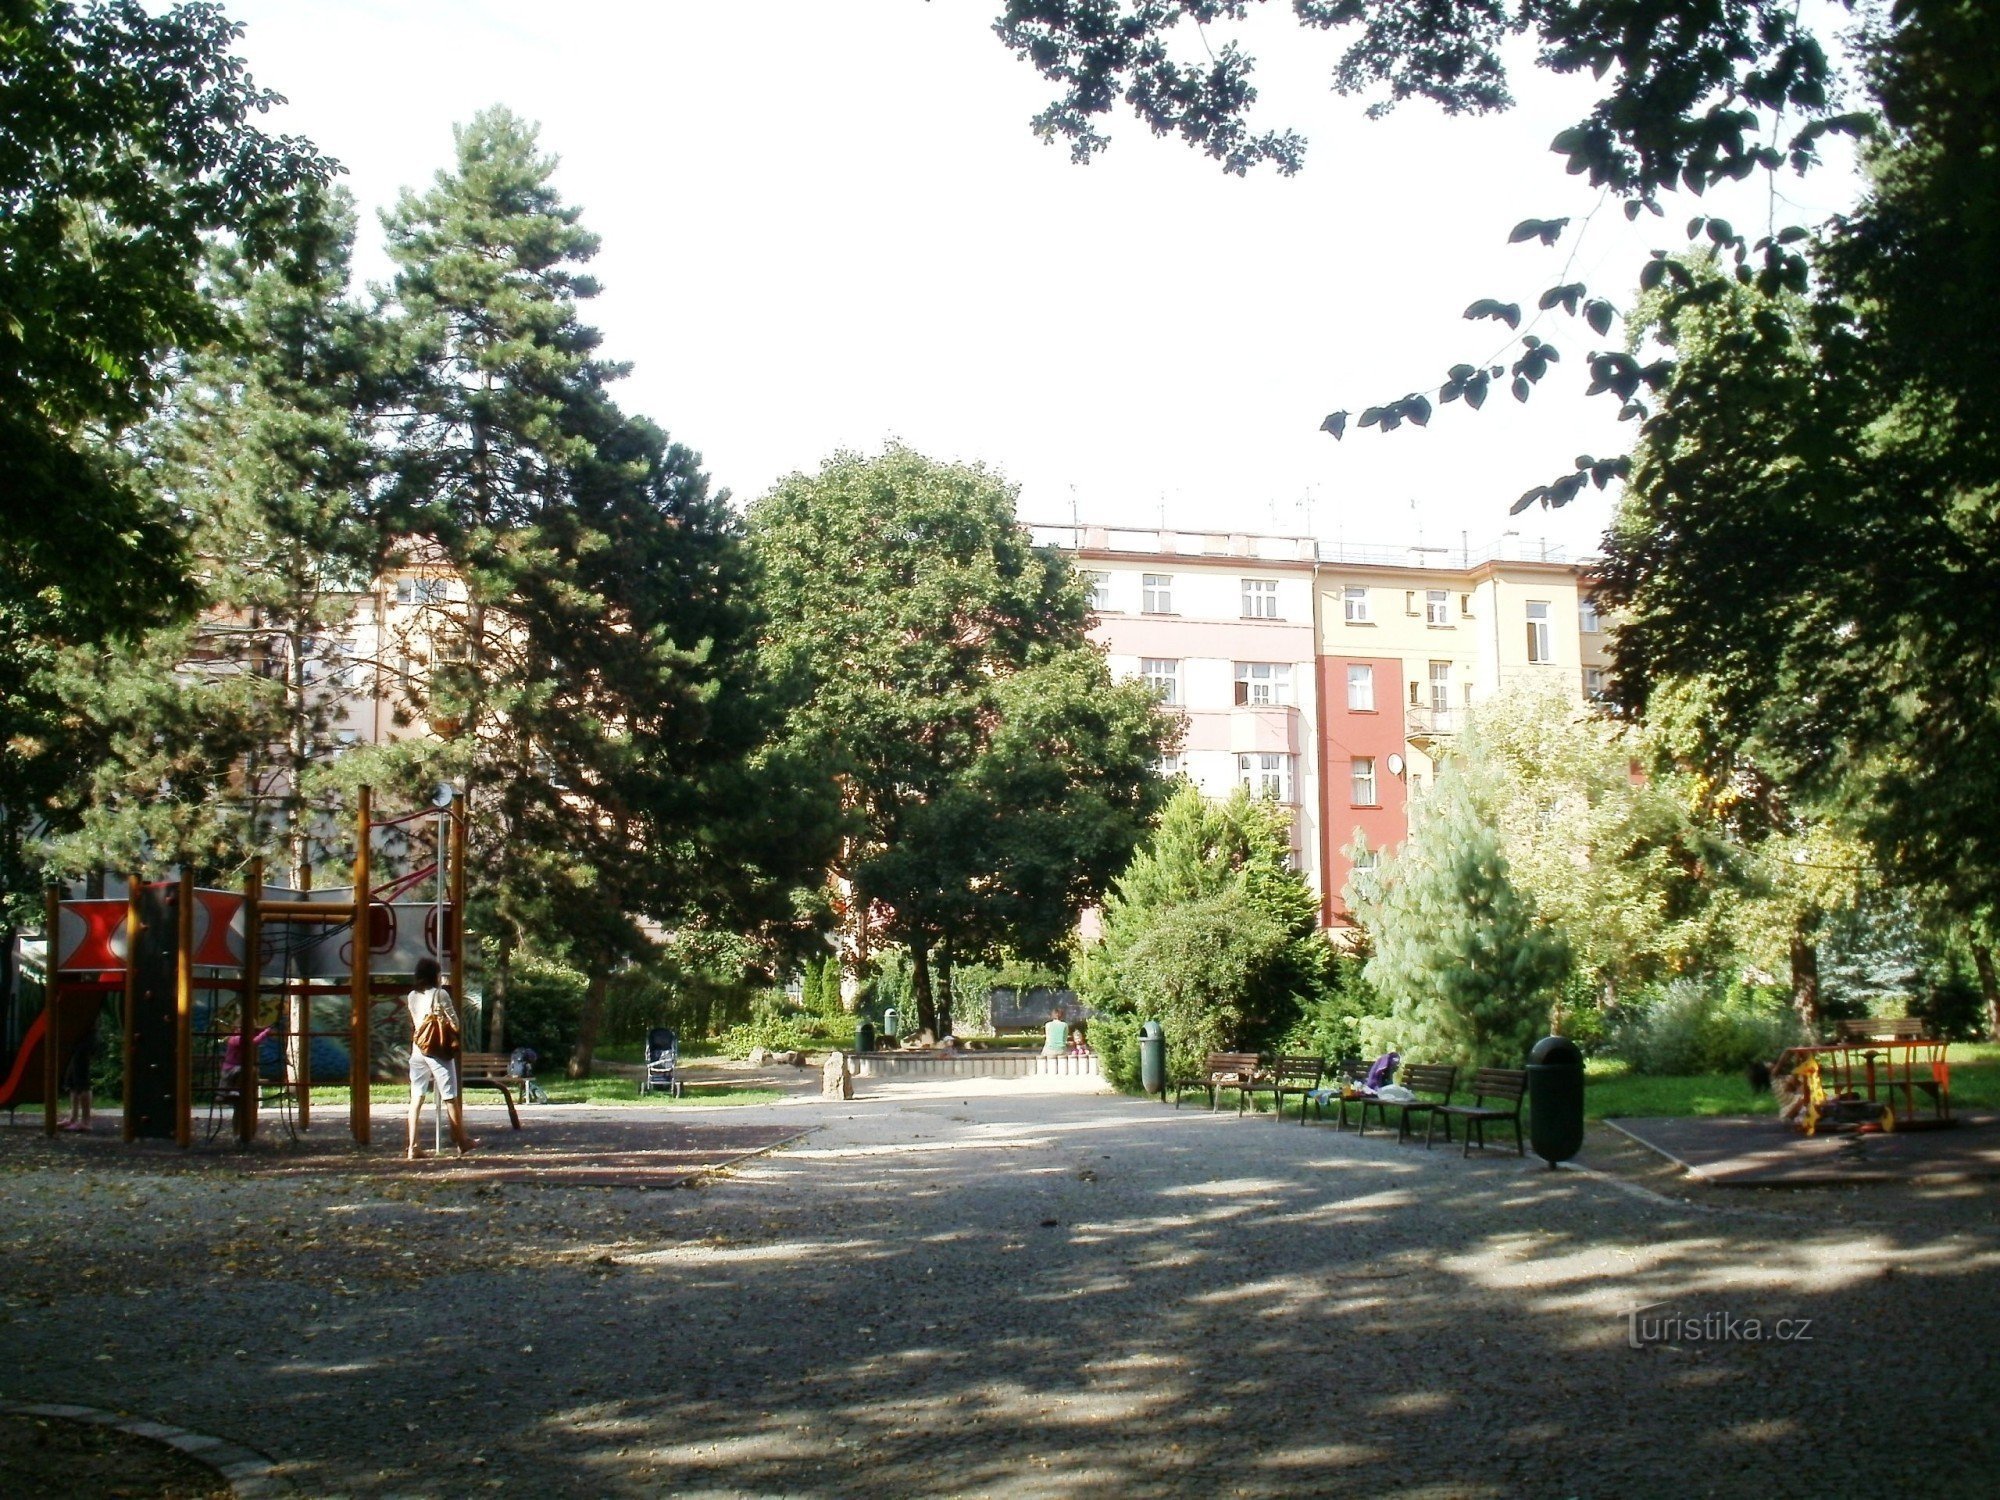 Hradec Králové - eventyrpark